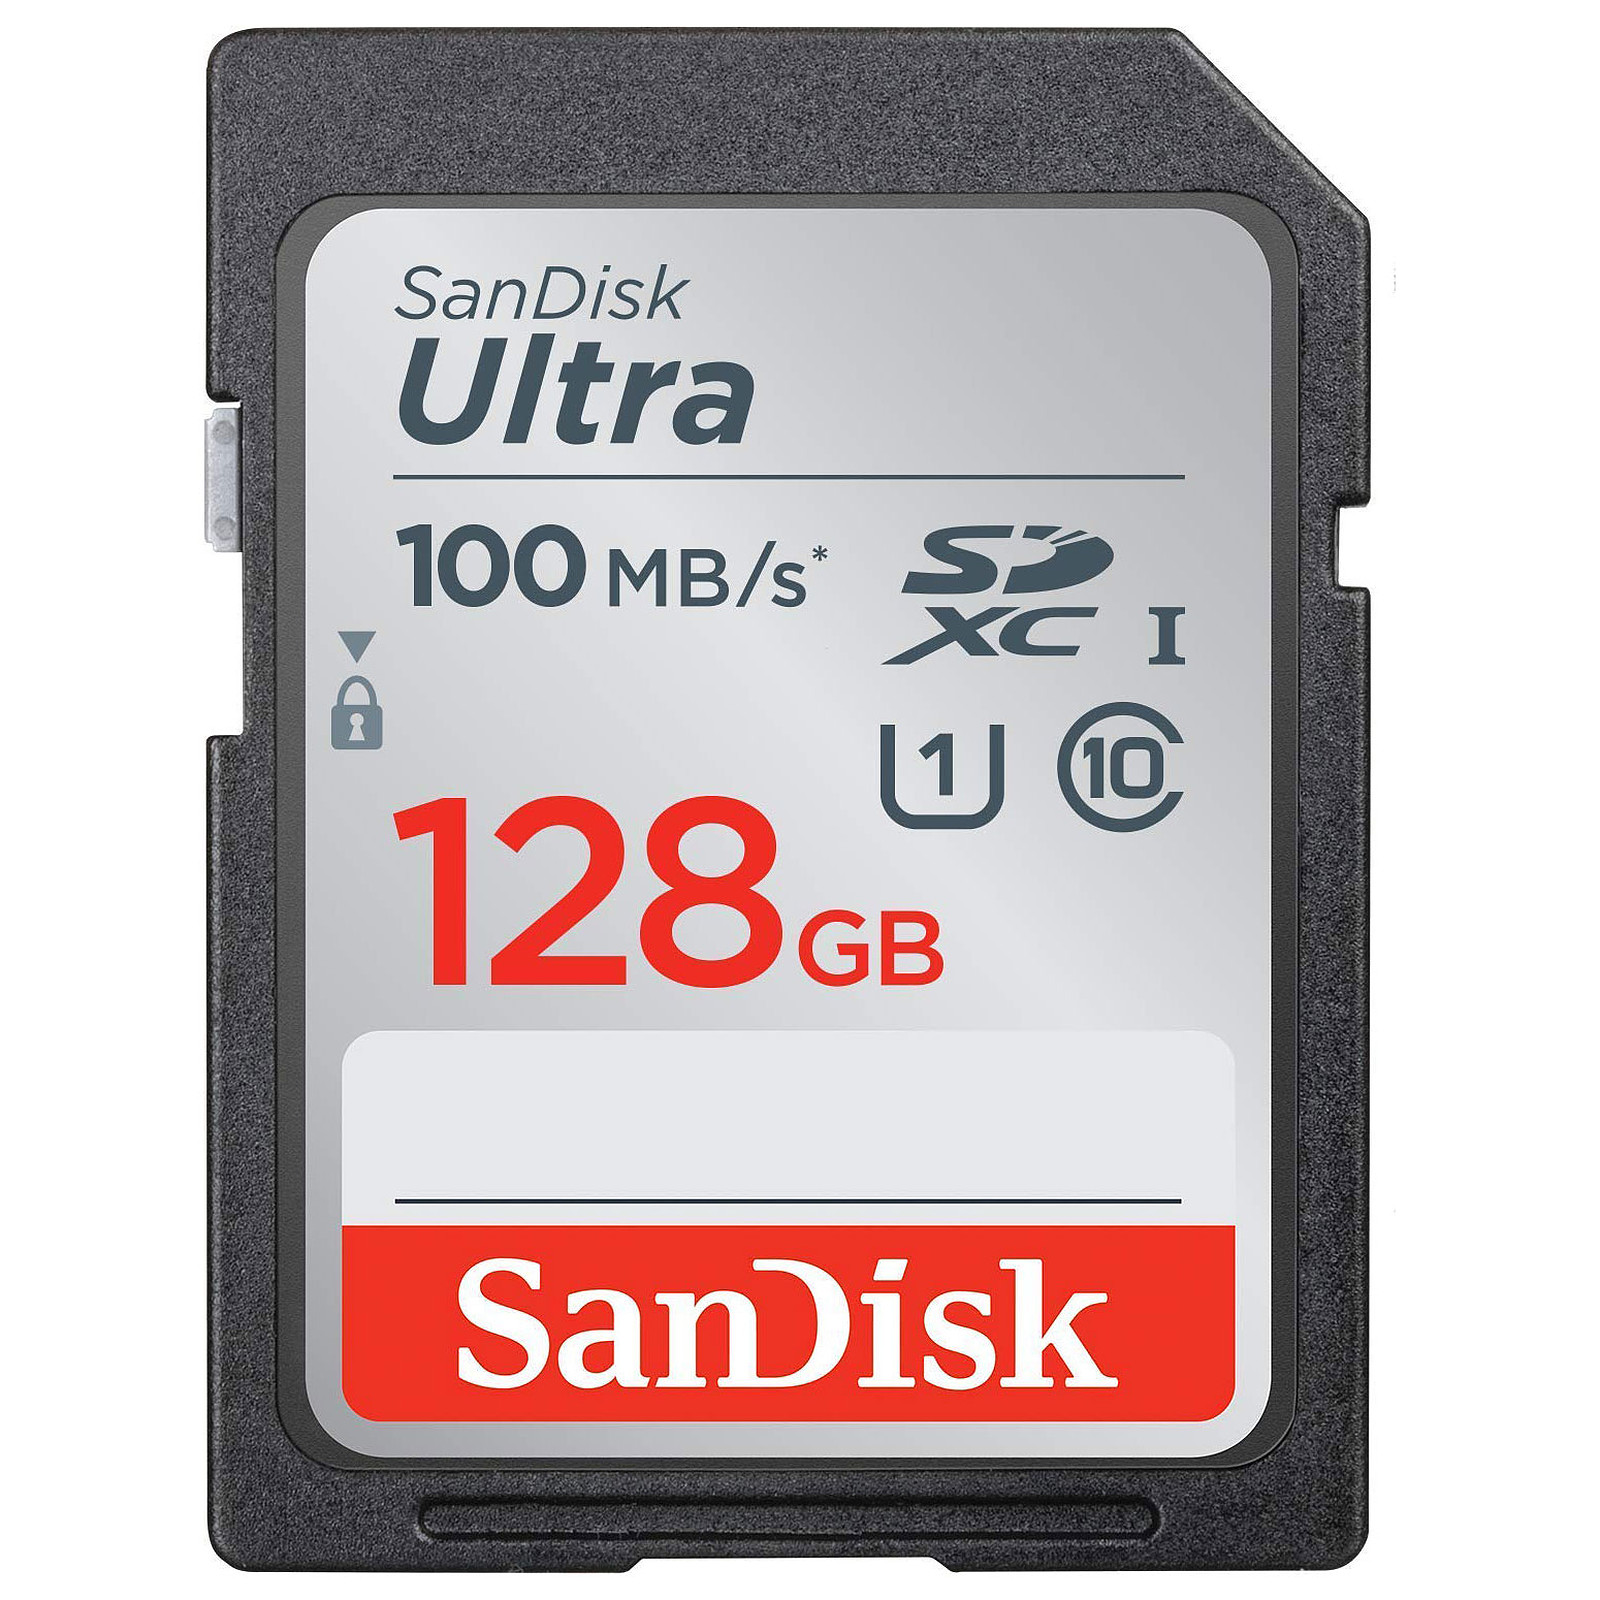 SanDisk Ultra SDXC UHS-I U1 128 Go (SDSDUNR-128G-GN3IN) - Carte memoire Sandisk